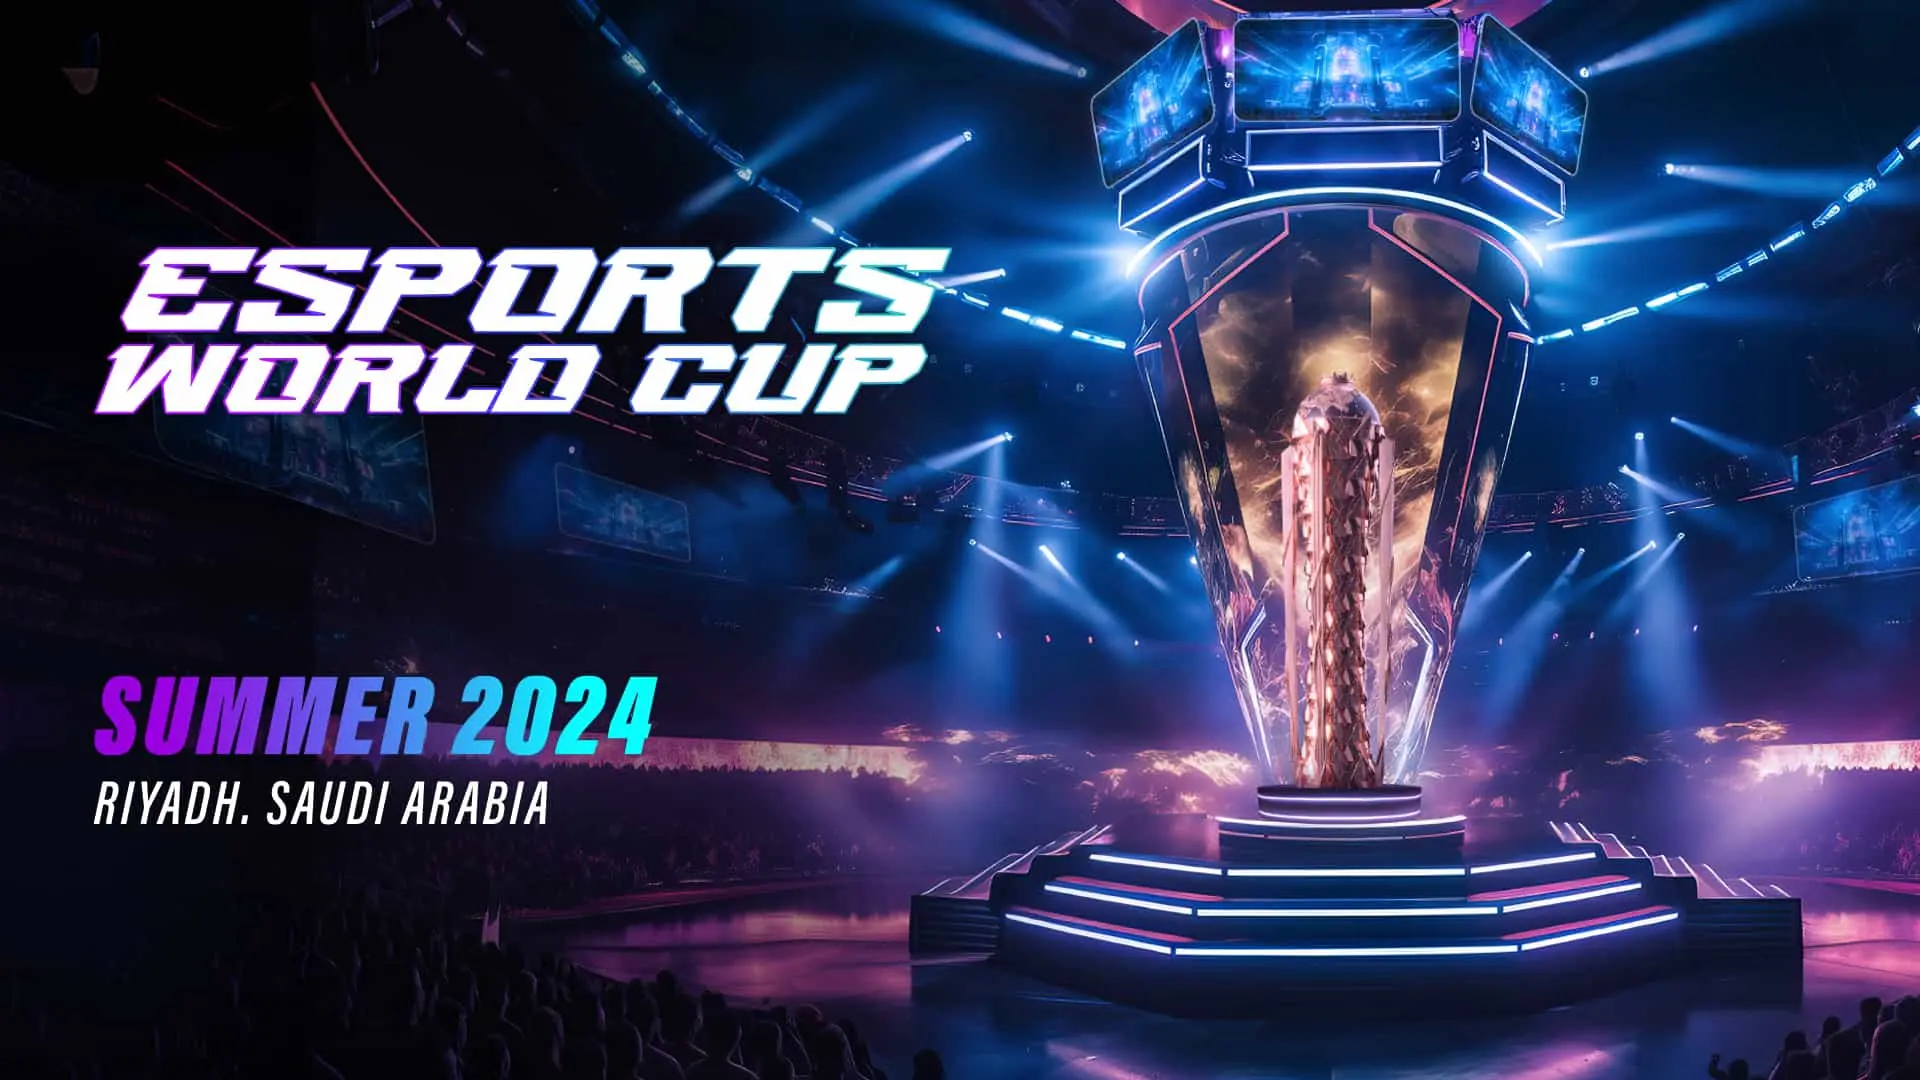 Copa do Mundo de Esports 2024 com premiação total de 60 milhões de dólares